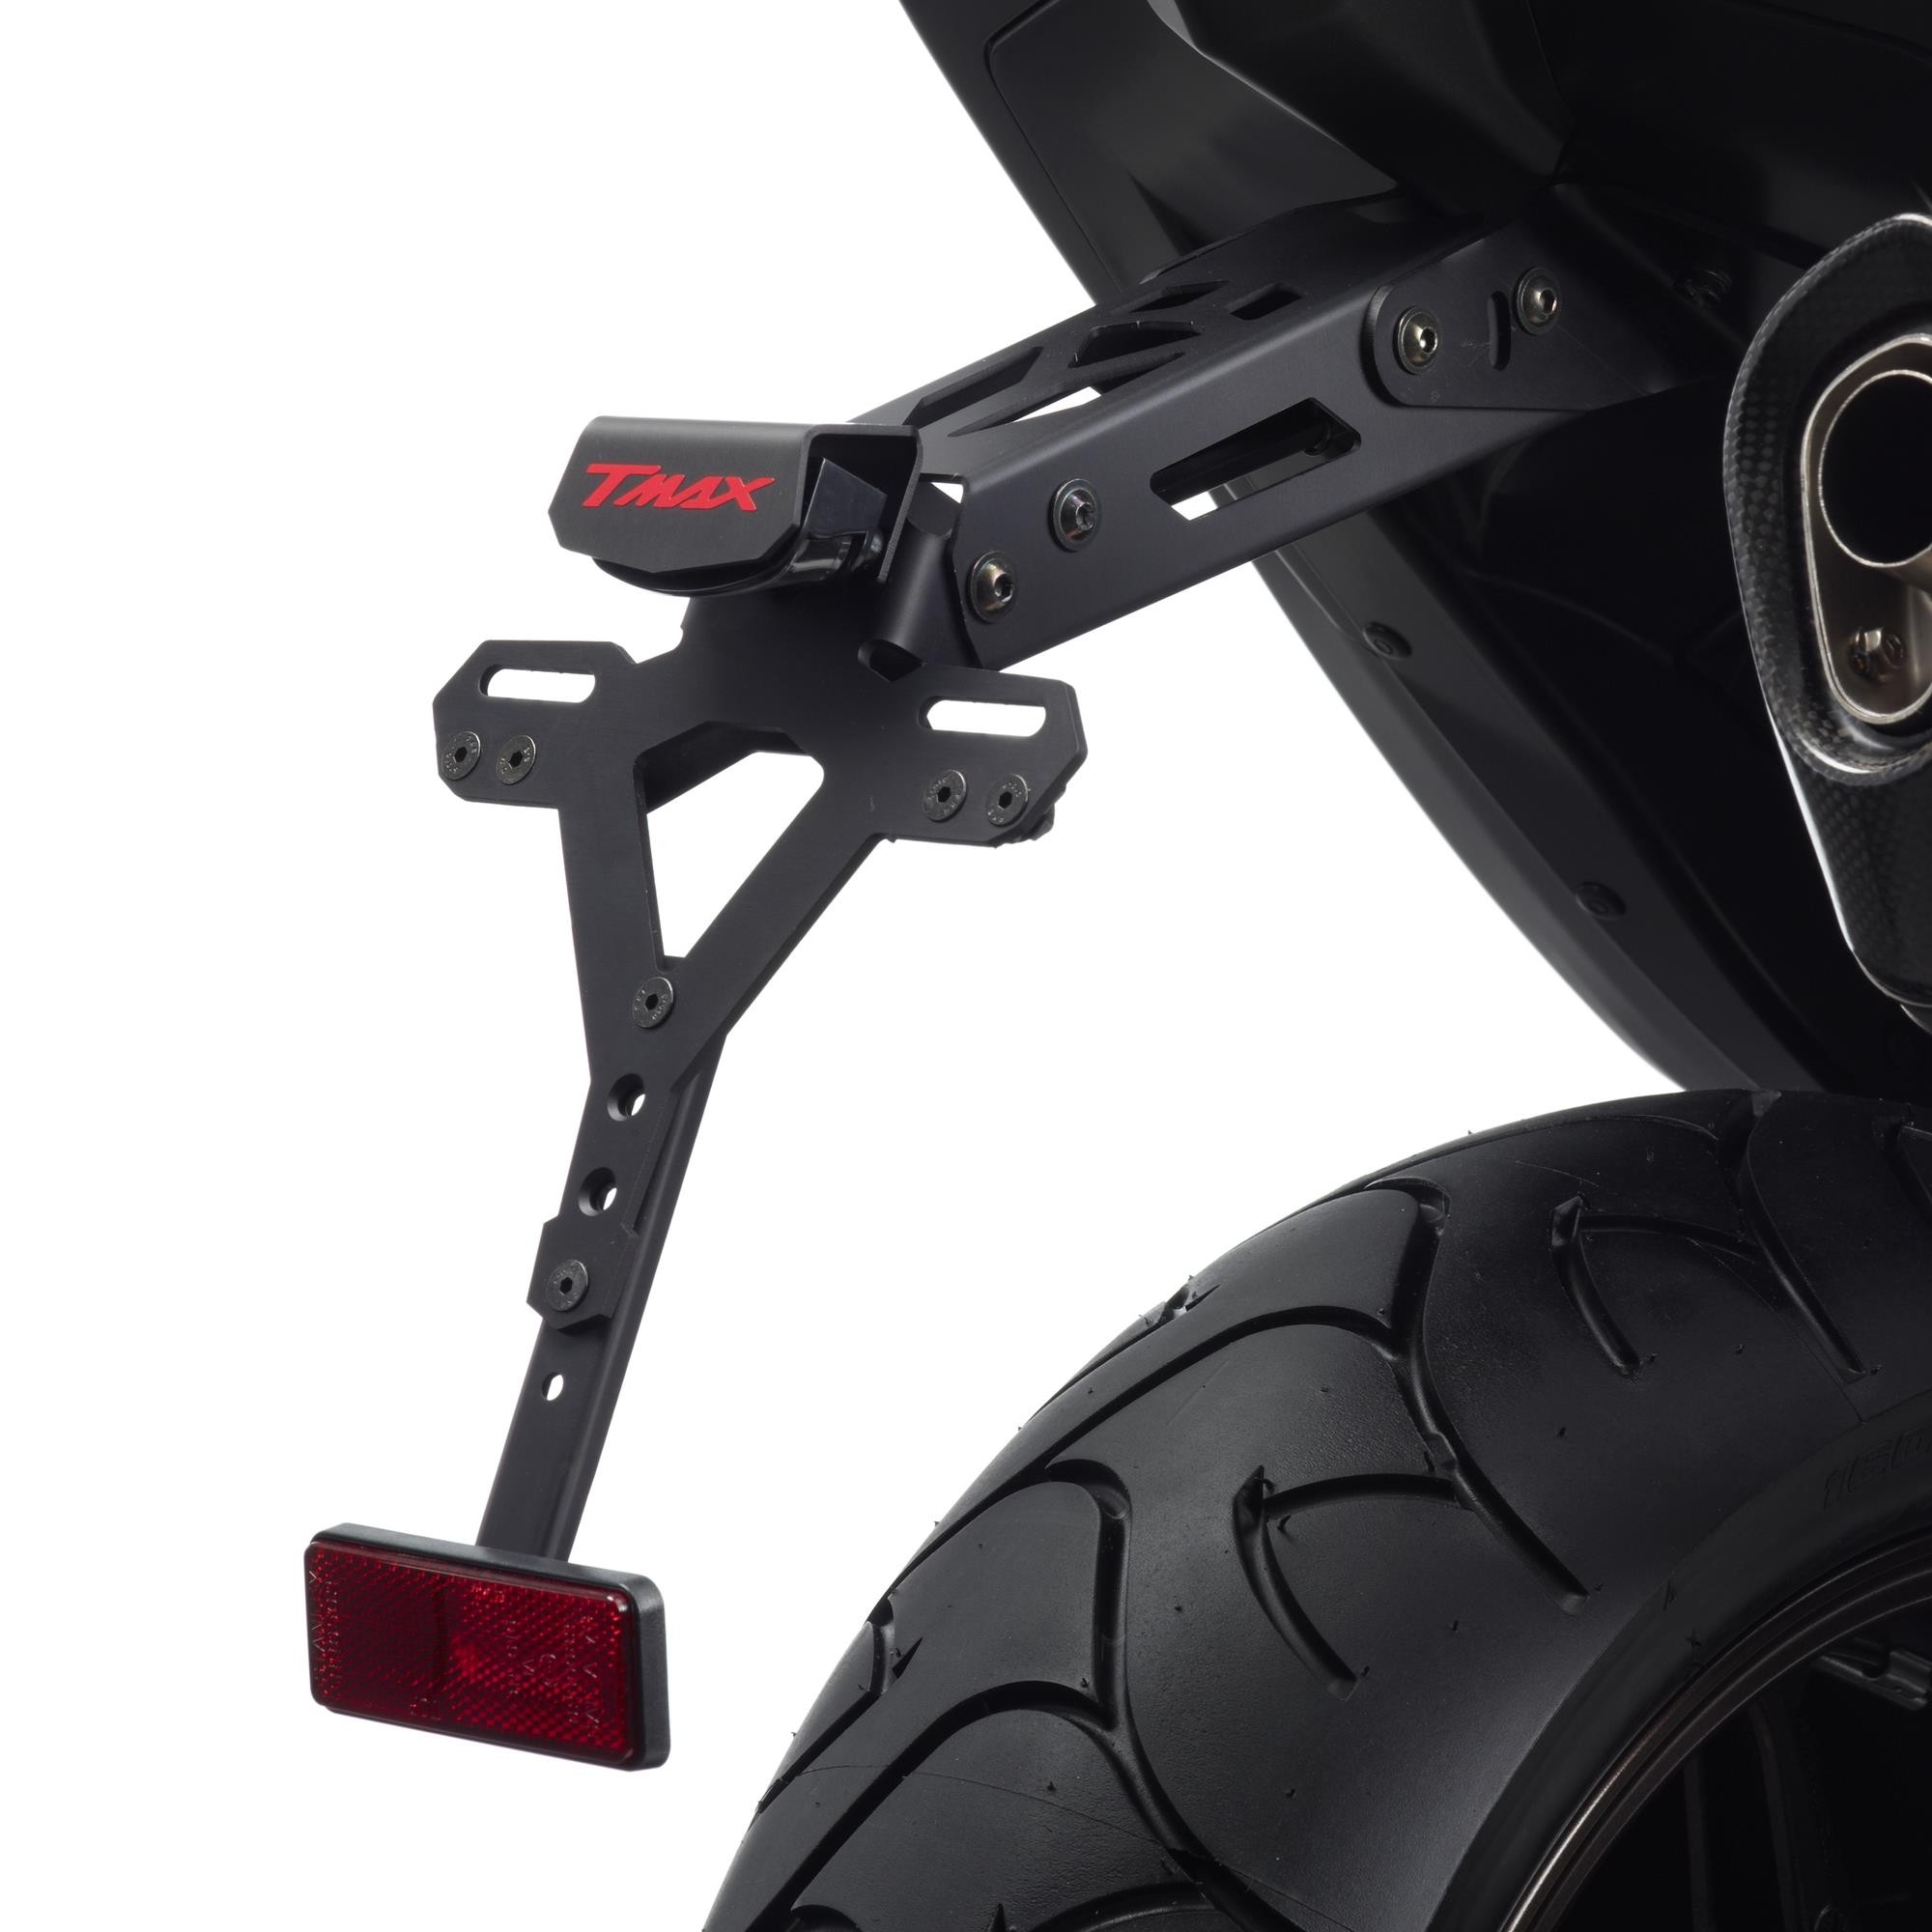 Accessoires De Pretto Moto - 100% Made in Italy - Visserie et Lumière LED Inclus R-0705 DPM Race TMAX 530 2012/16 Kit Support de Plaque dImmatriculation Réglable 